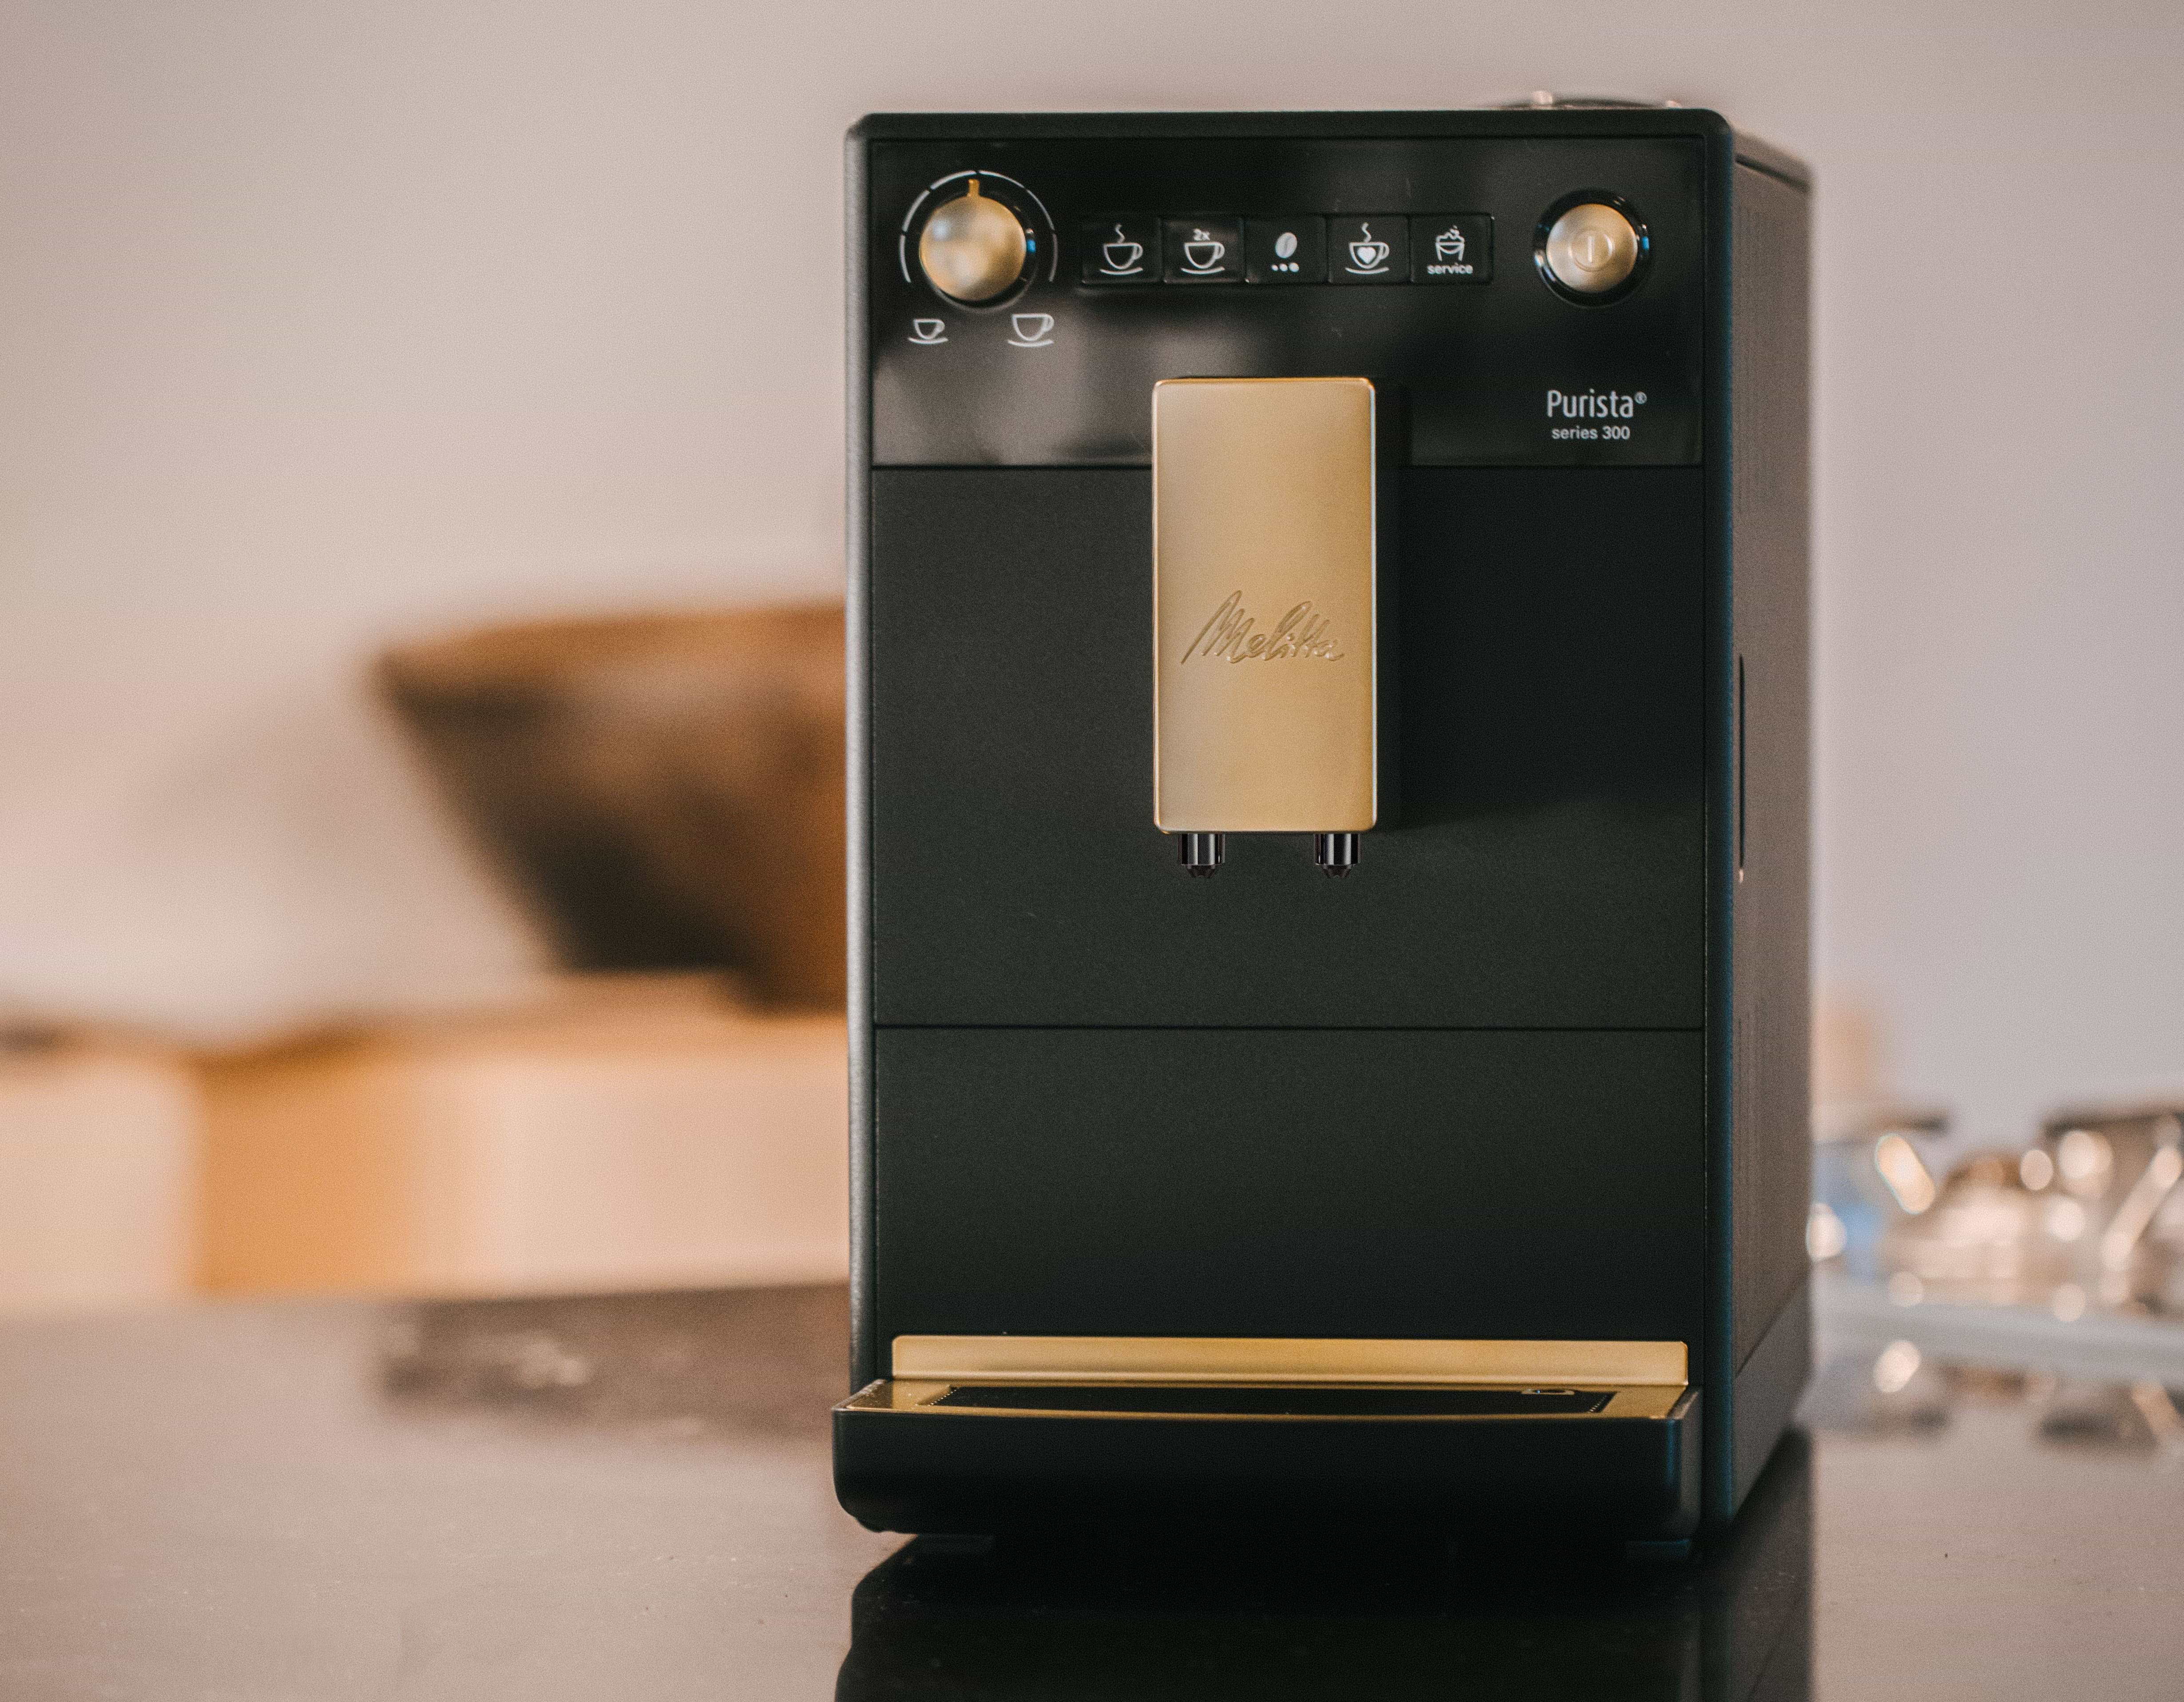 מכונת קפה אוטומטית טוחנת Melitta Purista Series 300  Gold Edition מהדורה מוגבלת - שנה אחריות ע"י היבואן הרשמי